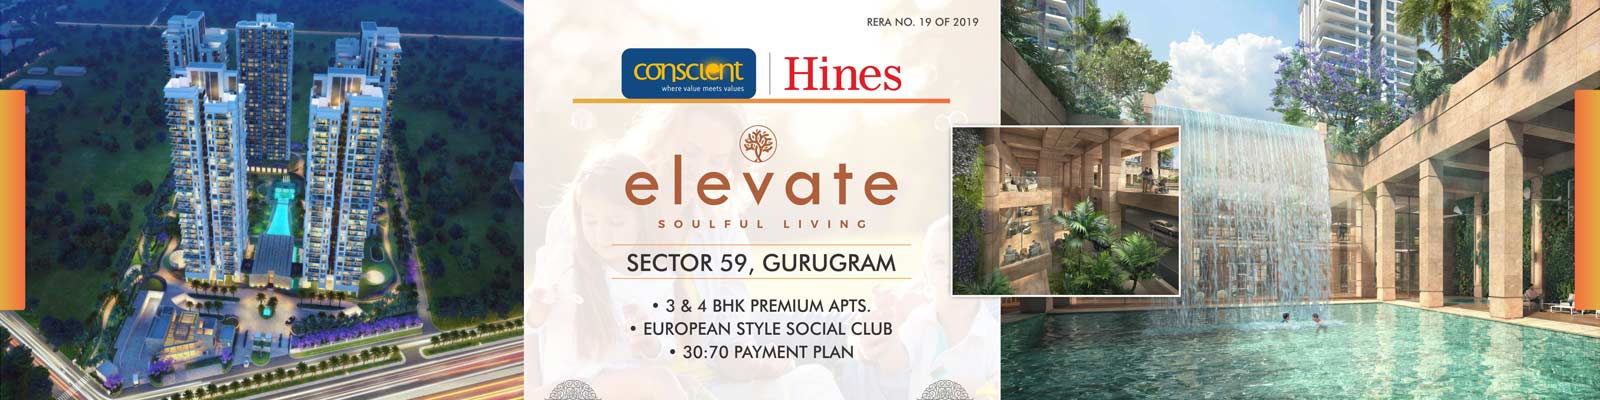 Conscient Hines Elevate Gurgaon